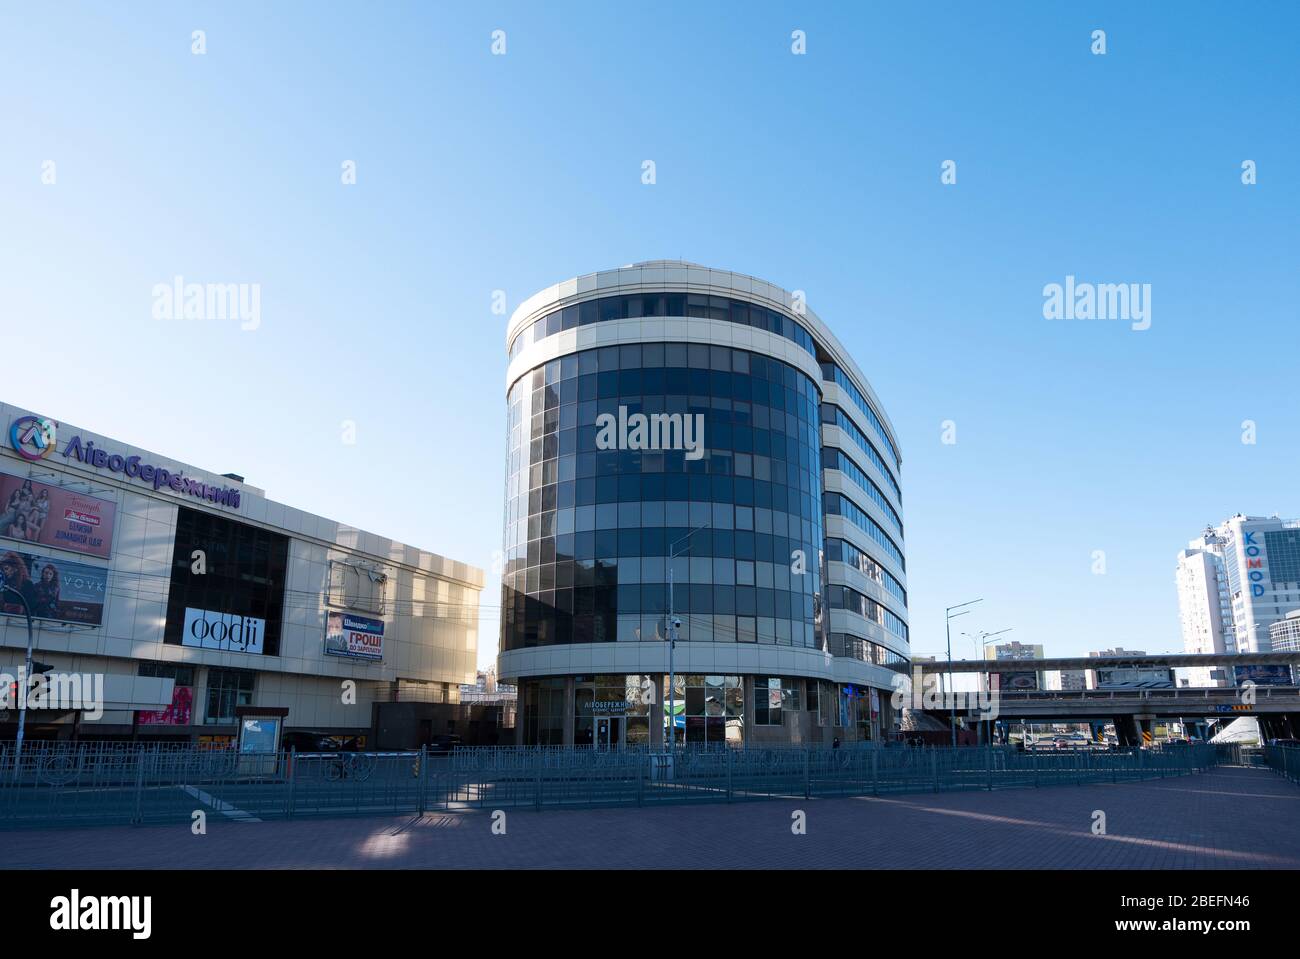 KIEV, UKRAINE - 5 AVRIL 2020: Centre commercial Livoberezhnyi avec fenêtres en verre bleu miroir. Rue vide près du métro Livoberezhna pendant la quarantaine Banque D'Images